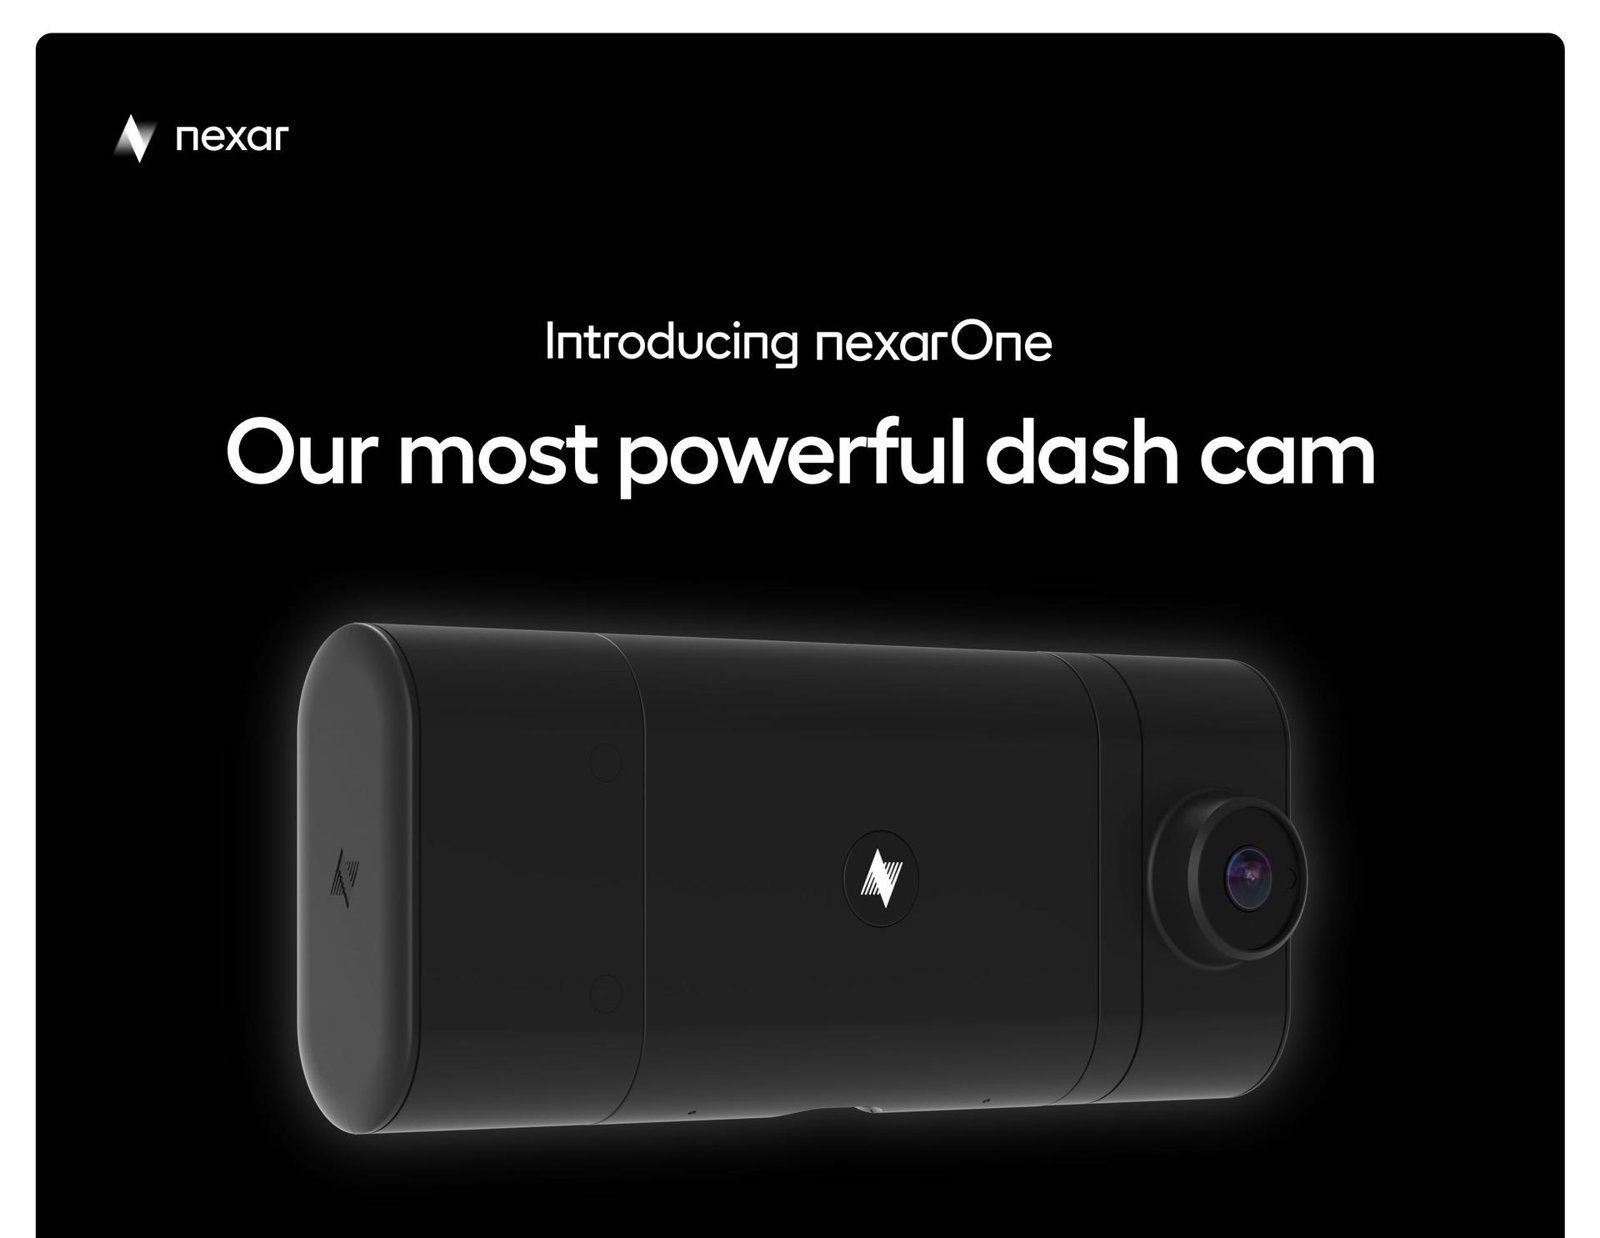 Nexar One Connected AI Dash Cam